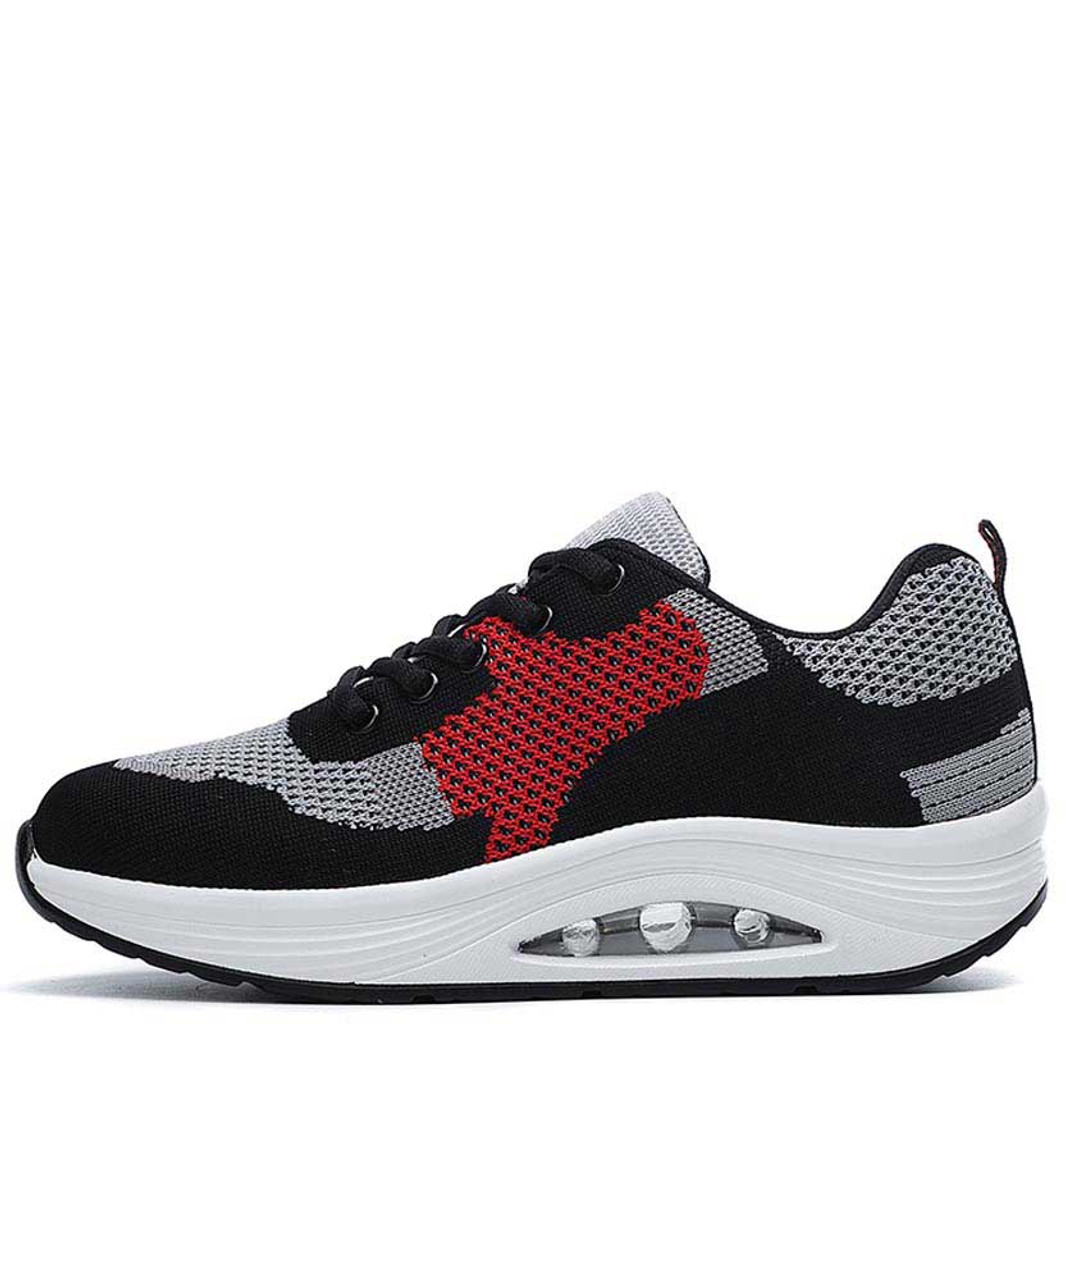 Black red flyknit rocker bottom shoe sneaker | Womens rocker shoes ...